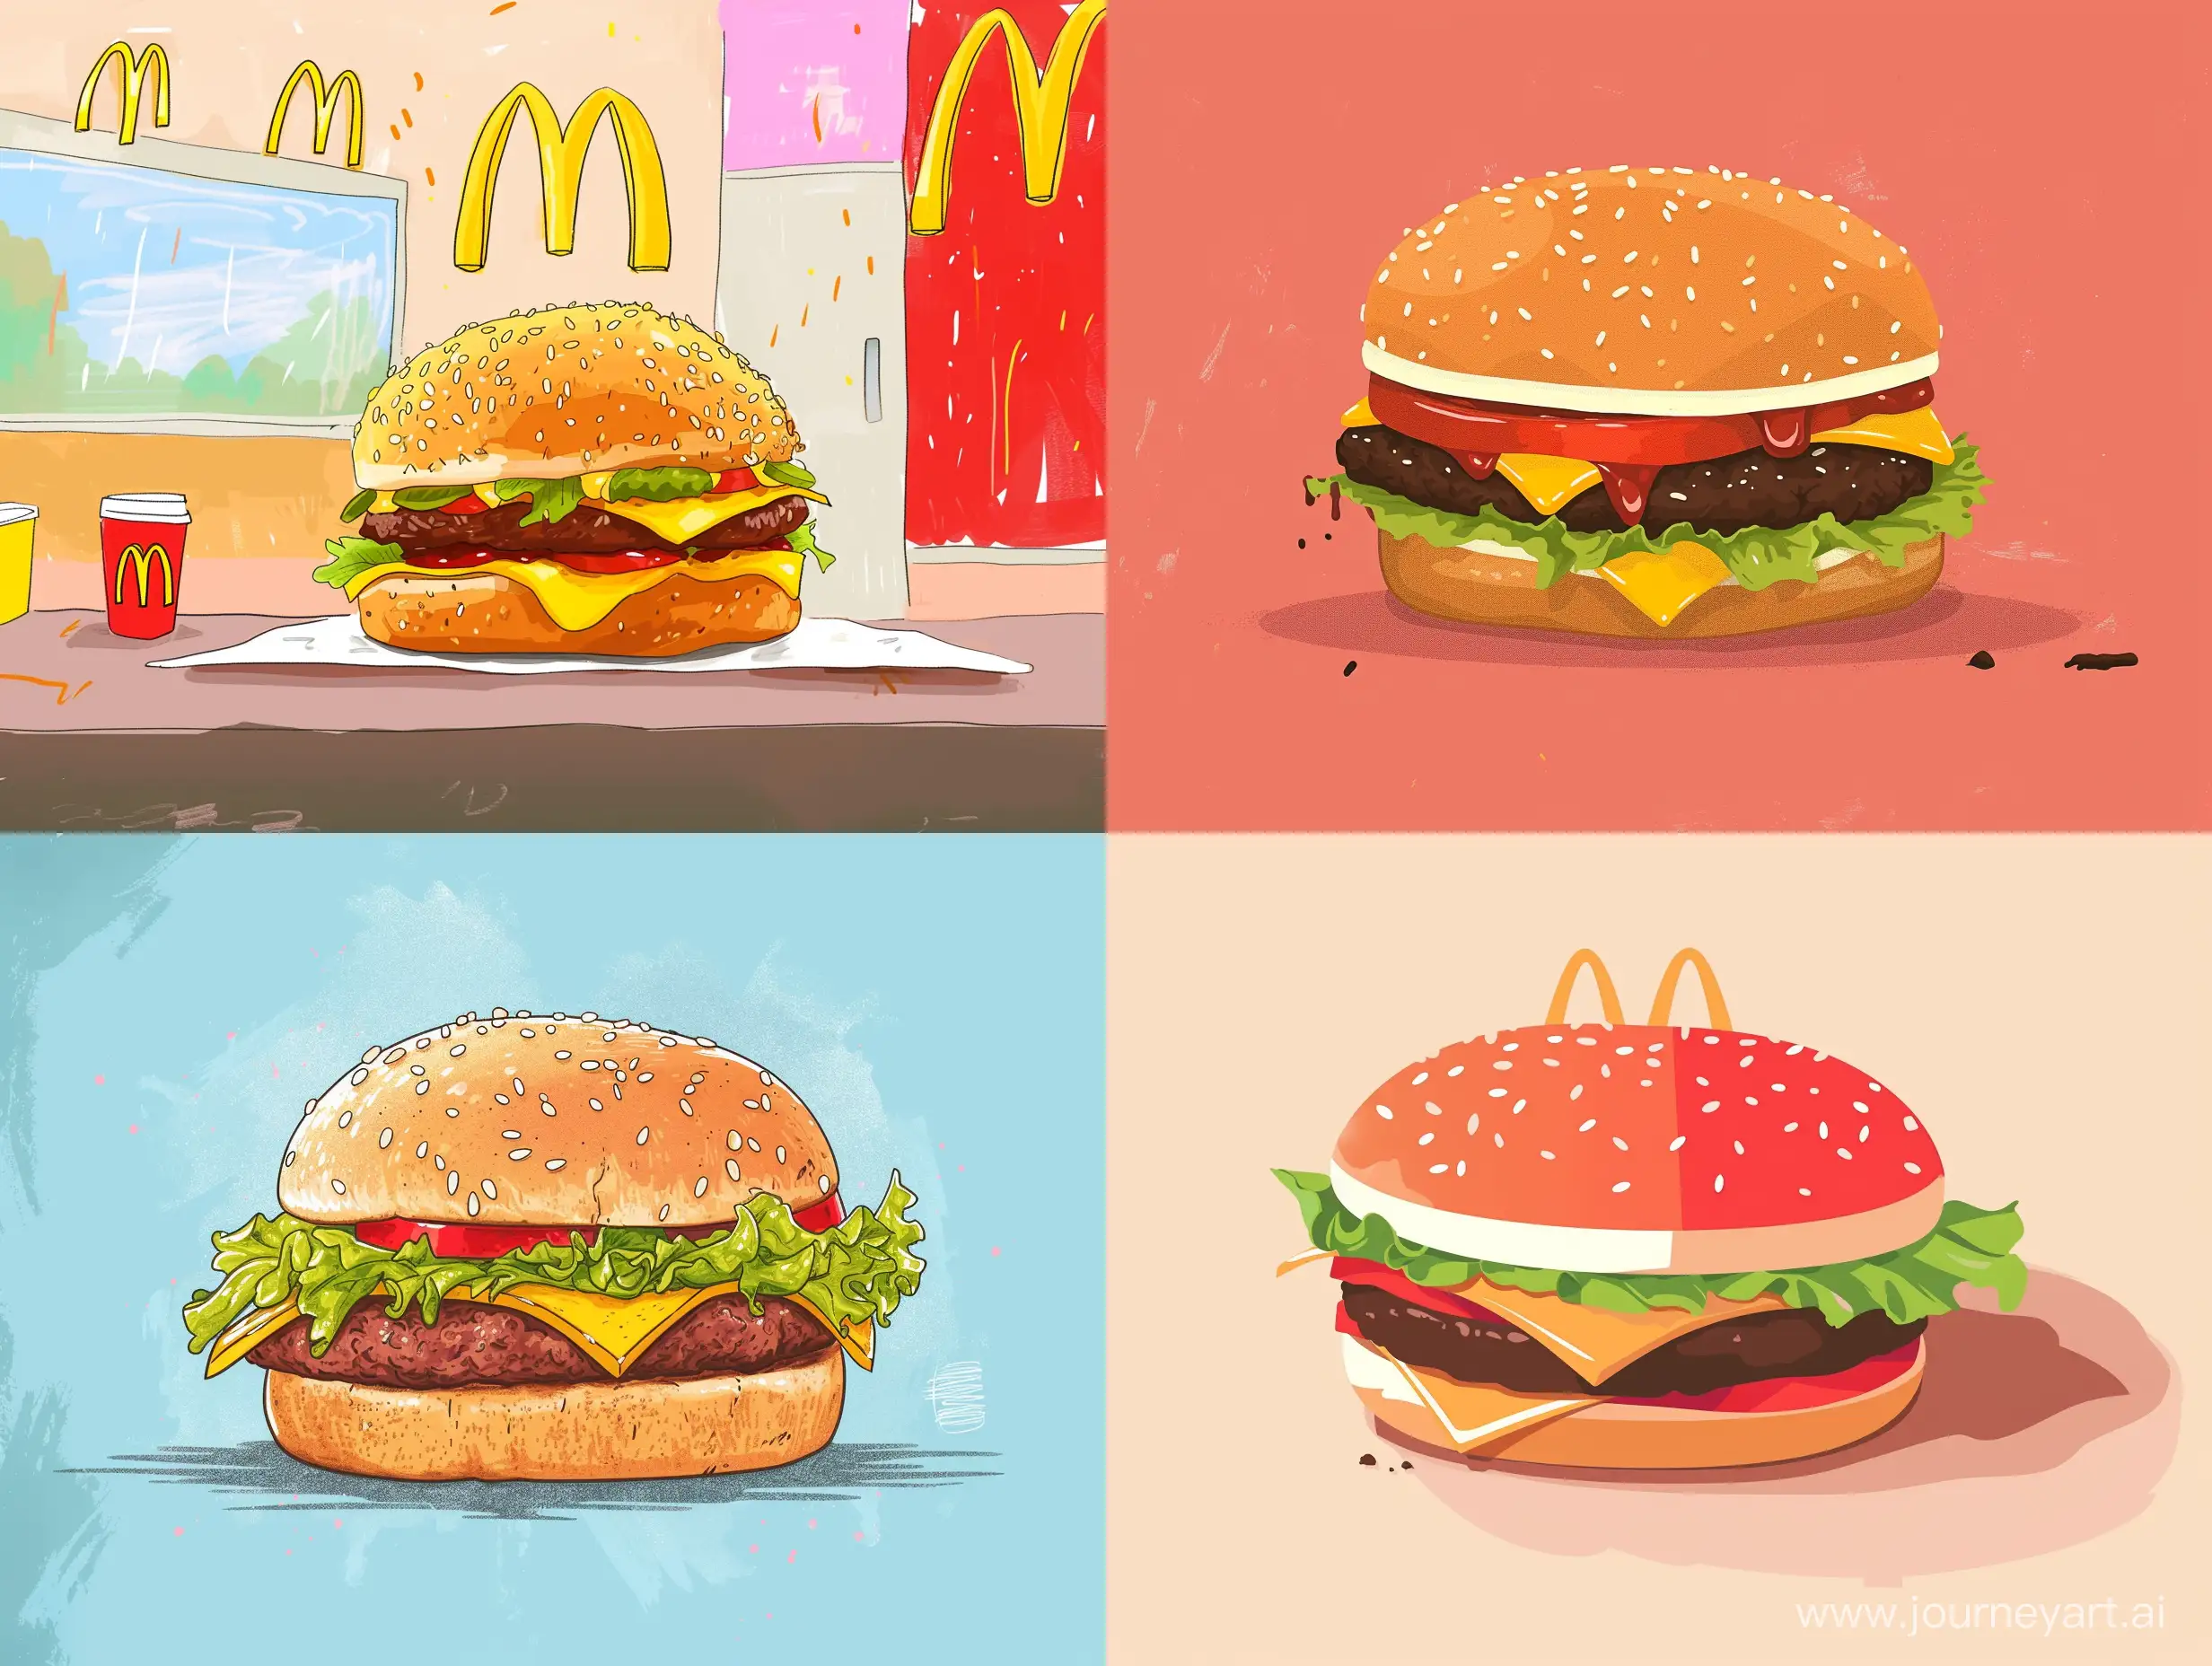 McDonalds meme, illustration